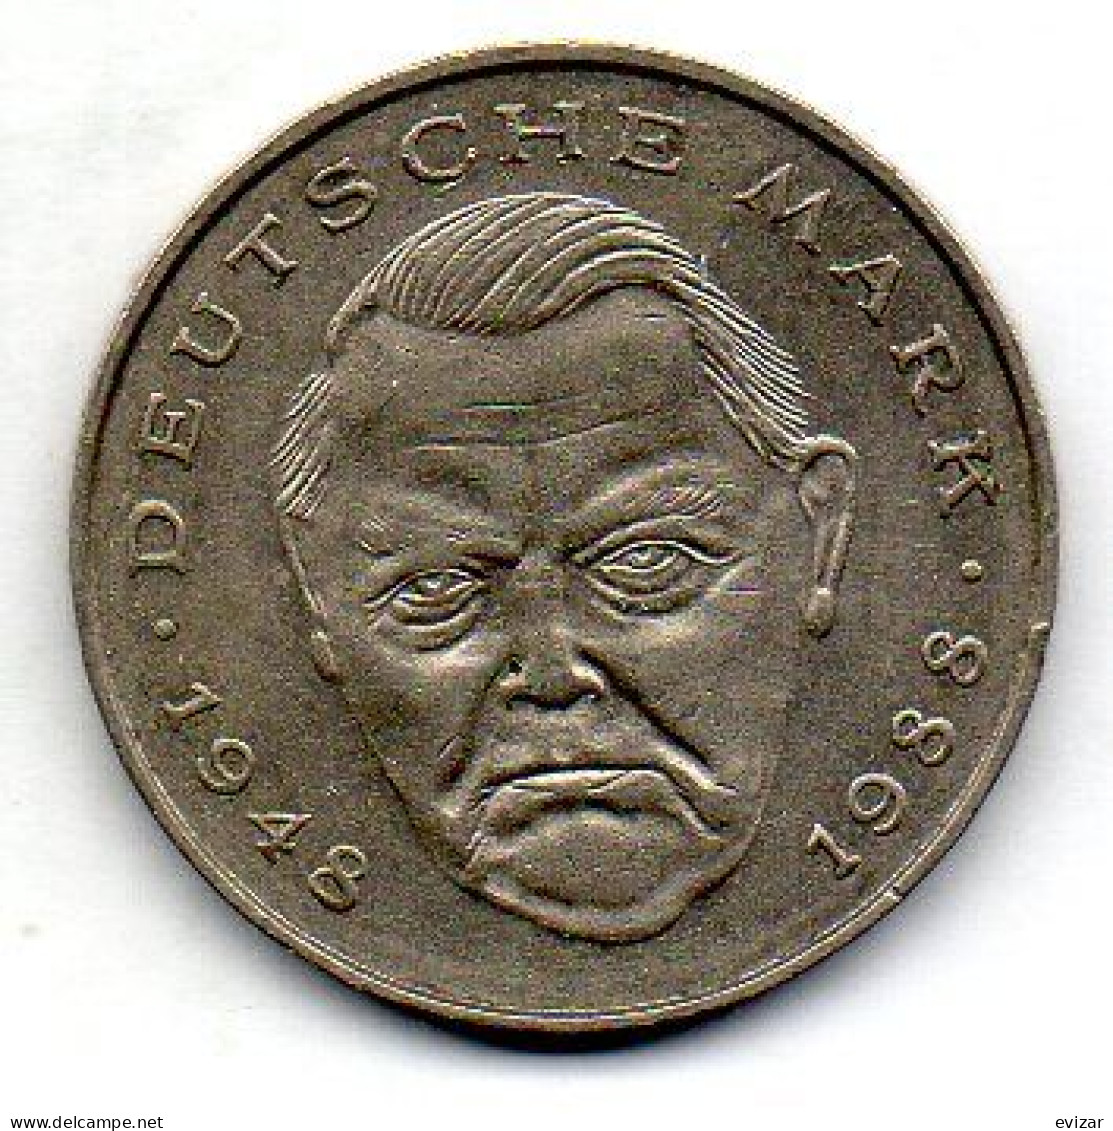 GERMANY - FEDERAL REPUBLIC, 2 Mark, Copper-Nickel, Year 1992-D, KM # 170 - 2 Marcos